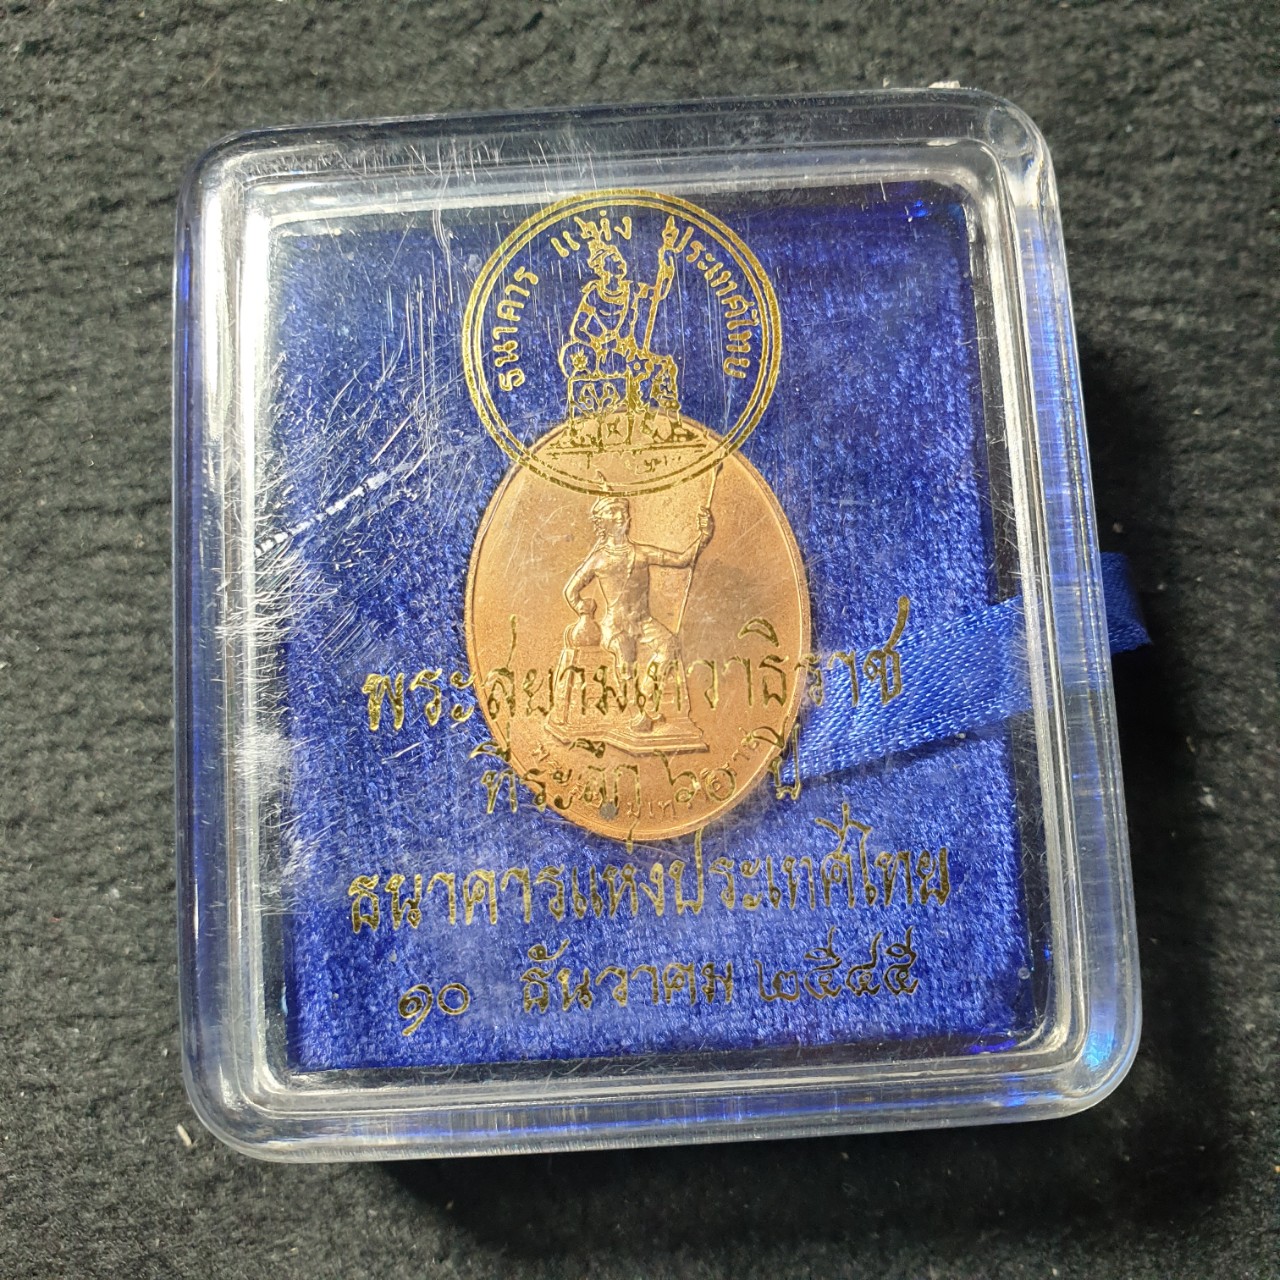 เหรียญพsะสยามเทวาิsาช ที่ระลึก 60 ปี ธนาคารแห่งปsะเทศไทย 10 ธันวาคม 2545 เนื้oทoงแดง บล็อคกษาปณ์  พร้อมกล่องเดิม(สำเนา)